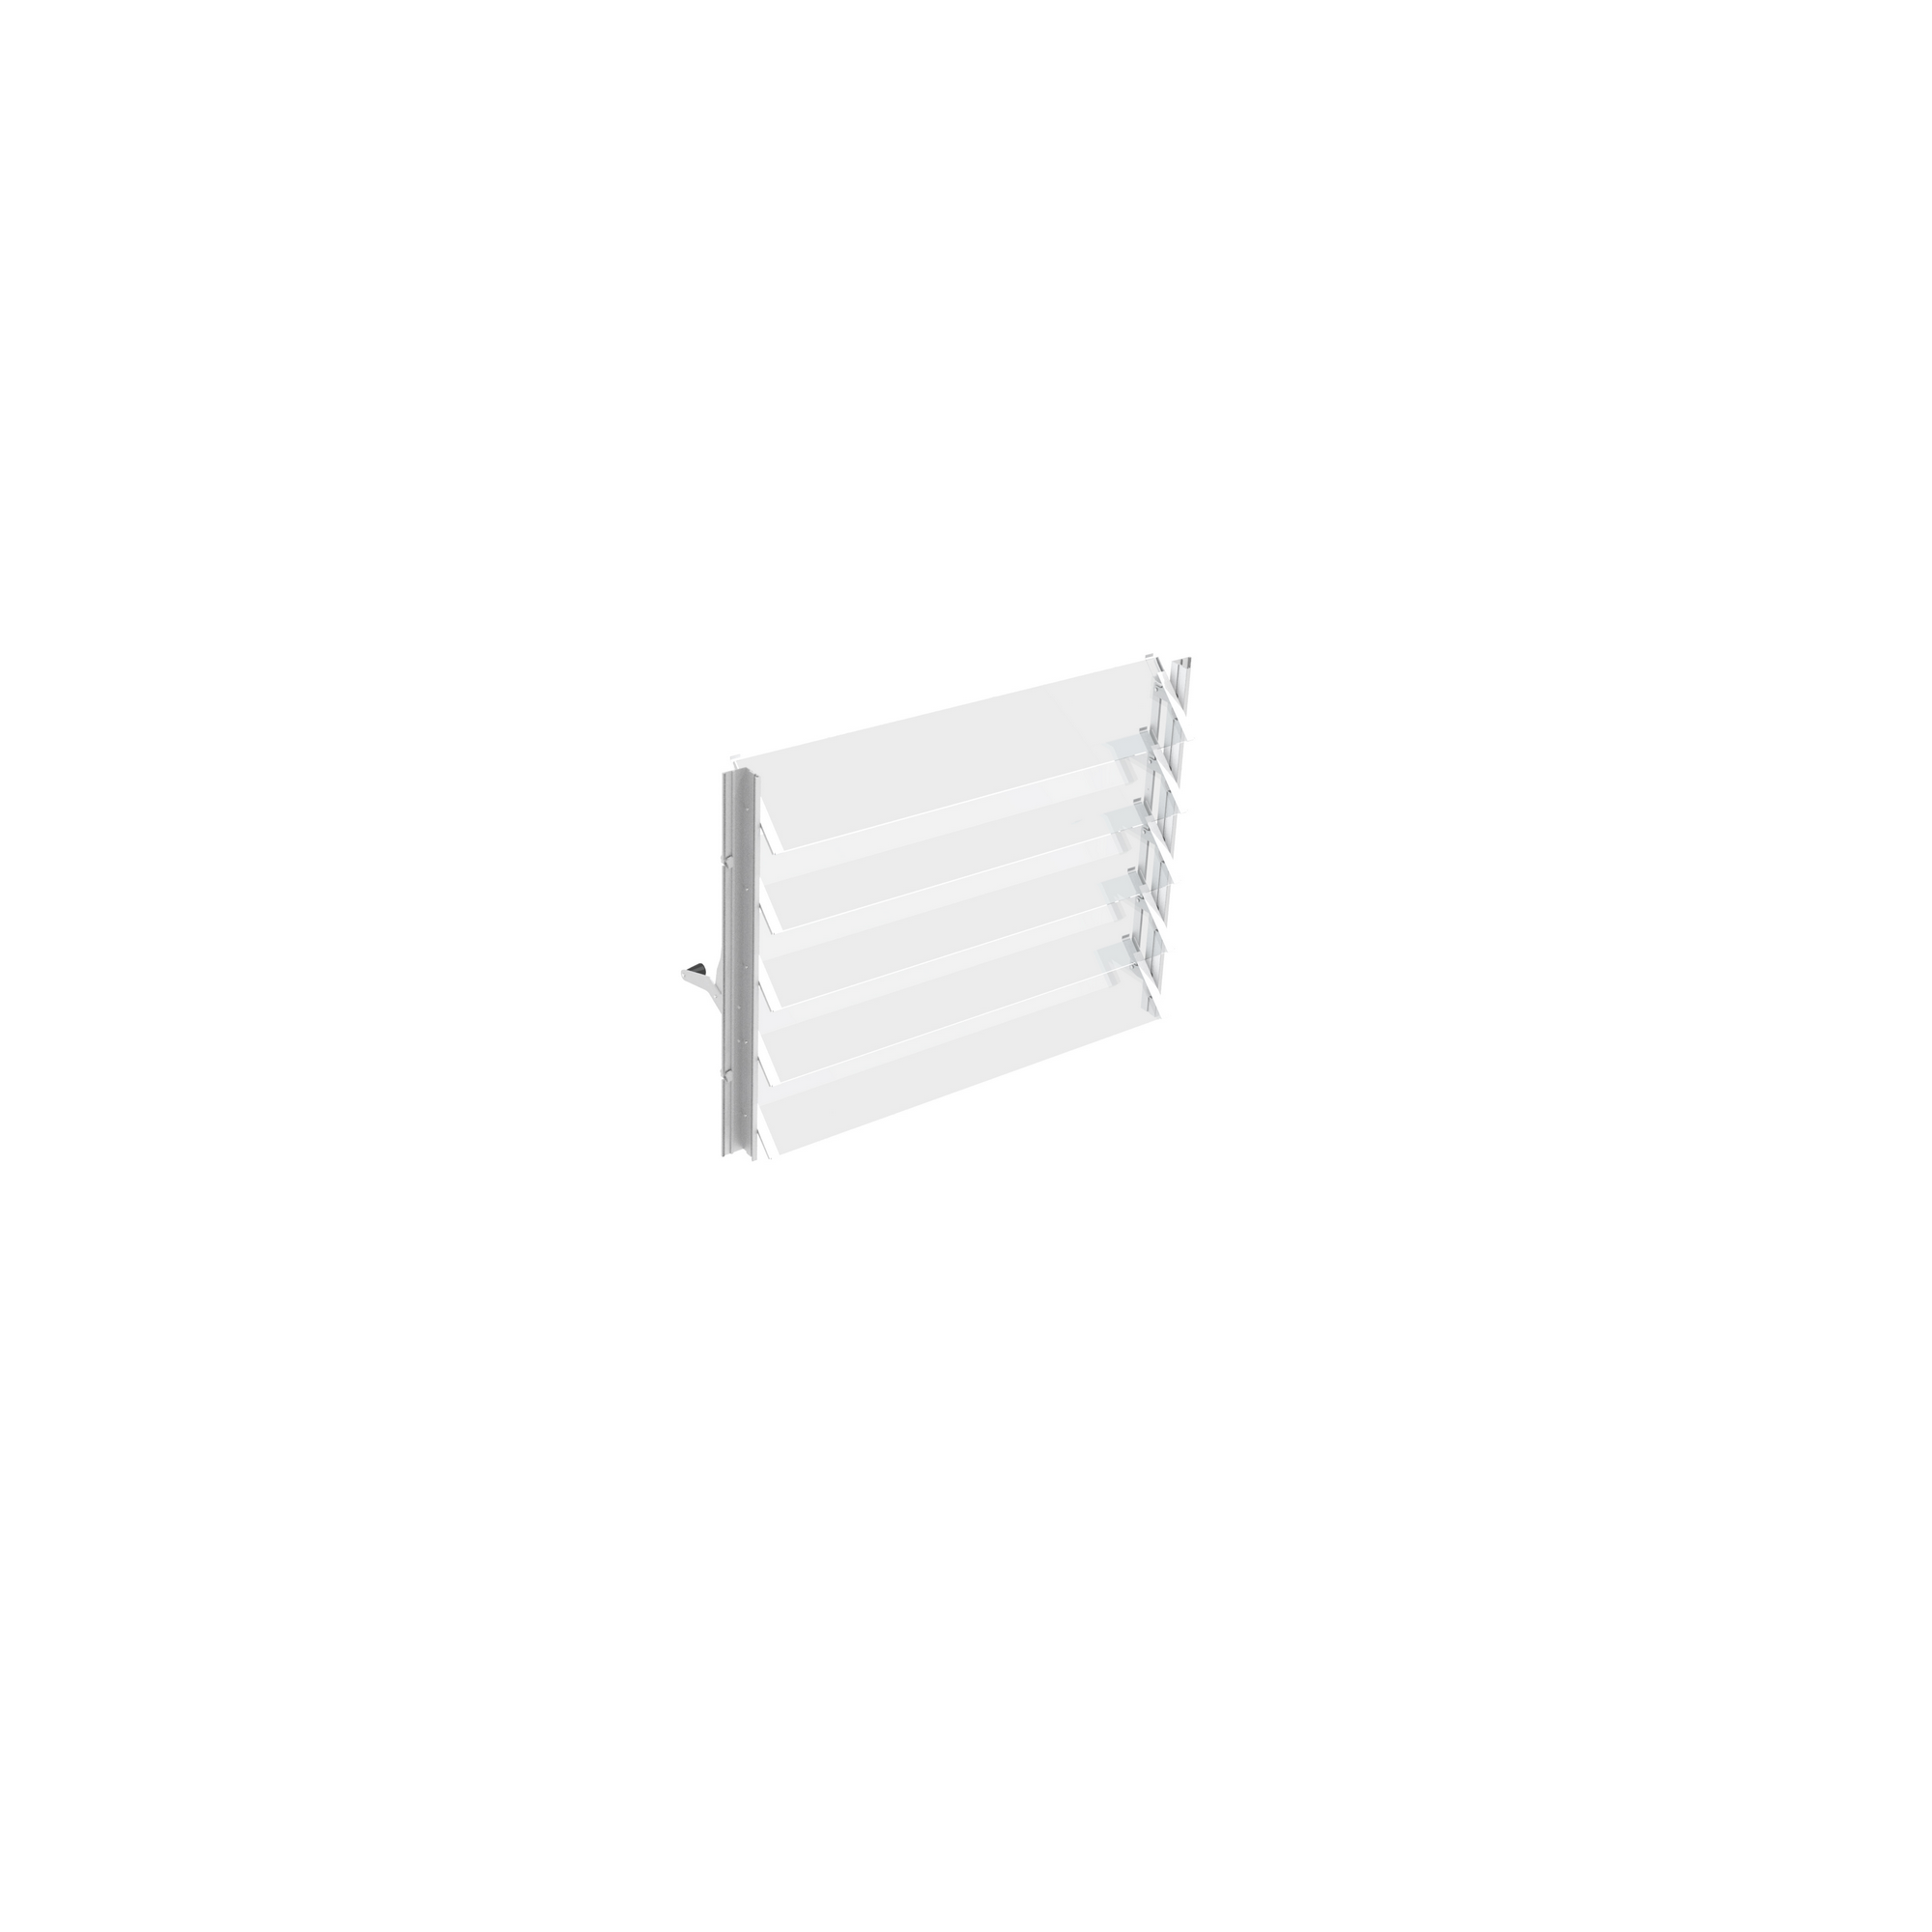 Lamellen-Wandfenster aus Aluminium silbern + product picture